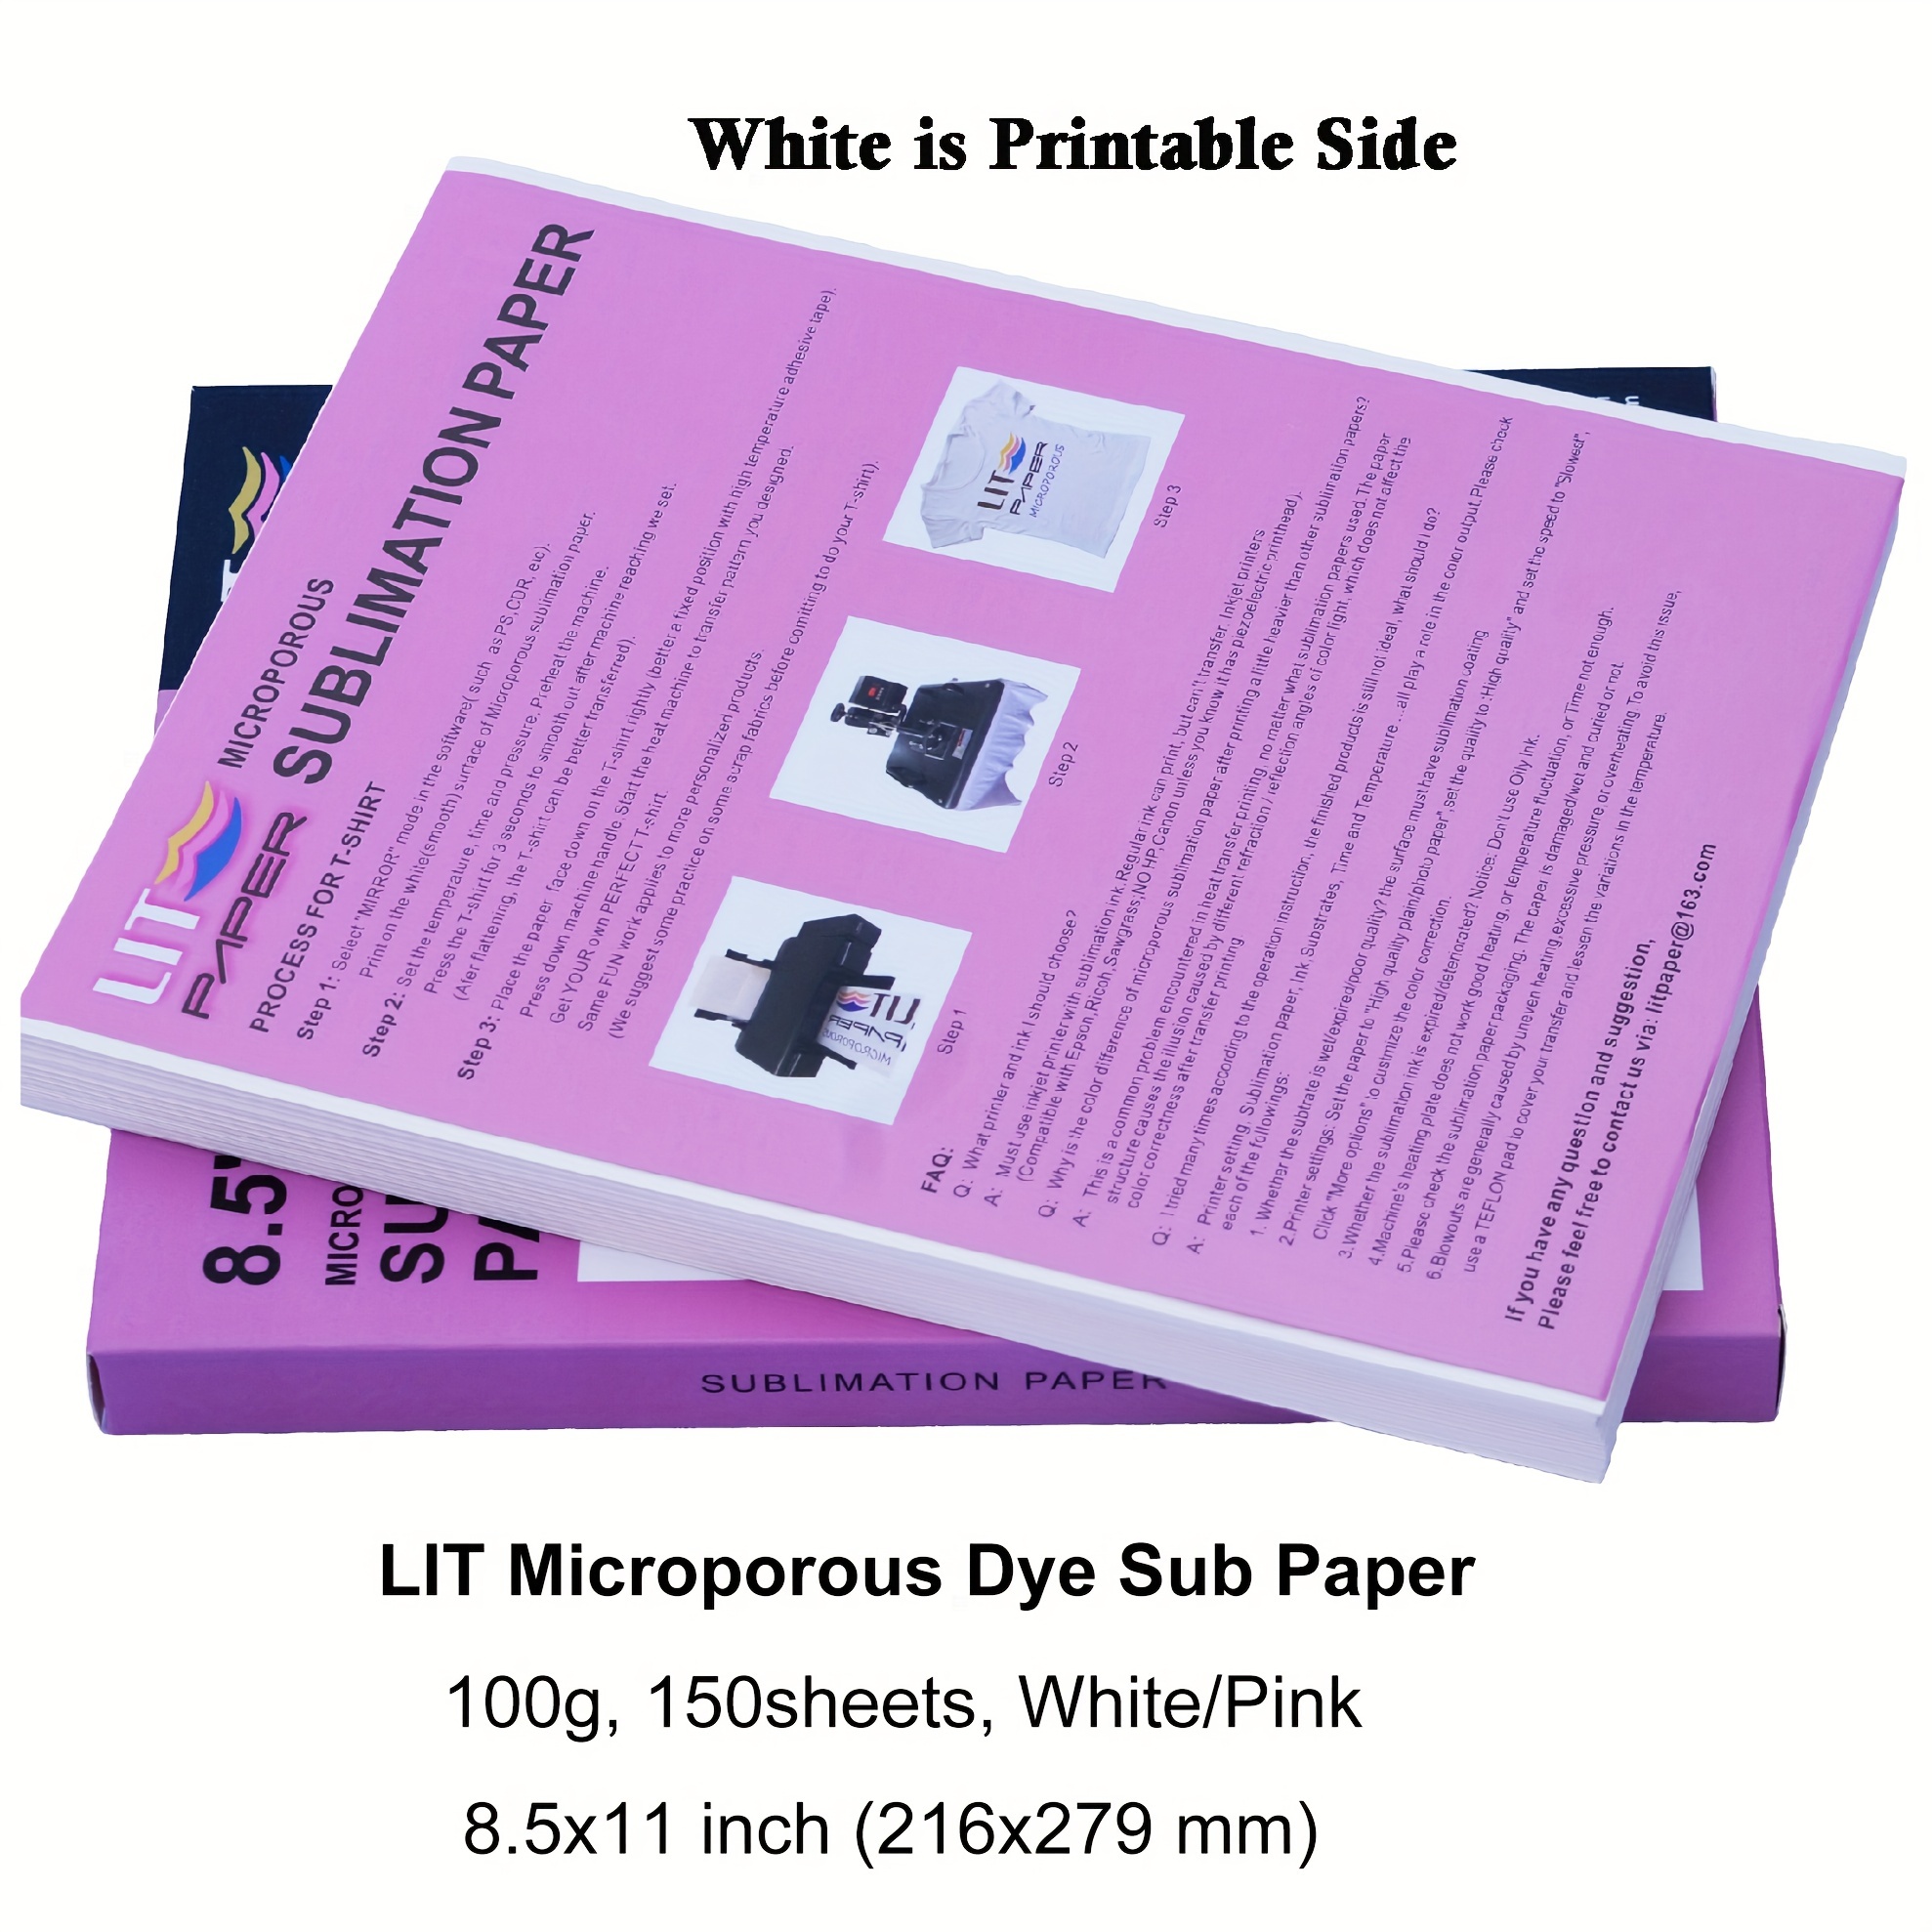 Odaro Papel de impresora térmica de 8.5 x 11 pulgadas, papel de tamaño  carta de EE.UU., multiusos, blanco de oficina, 100 hojas, compatible con  M08F